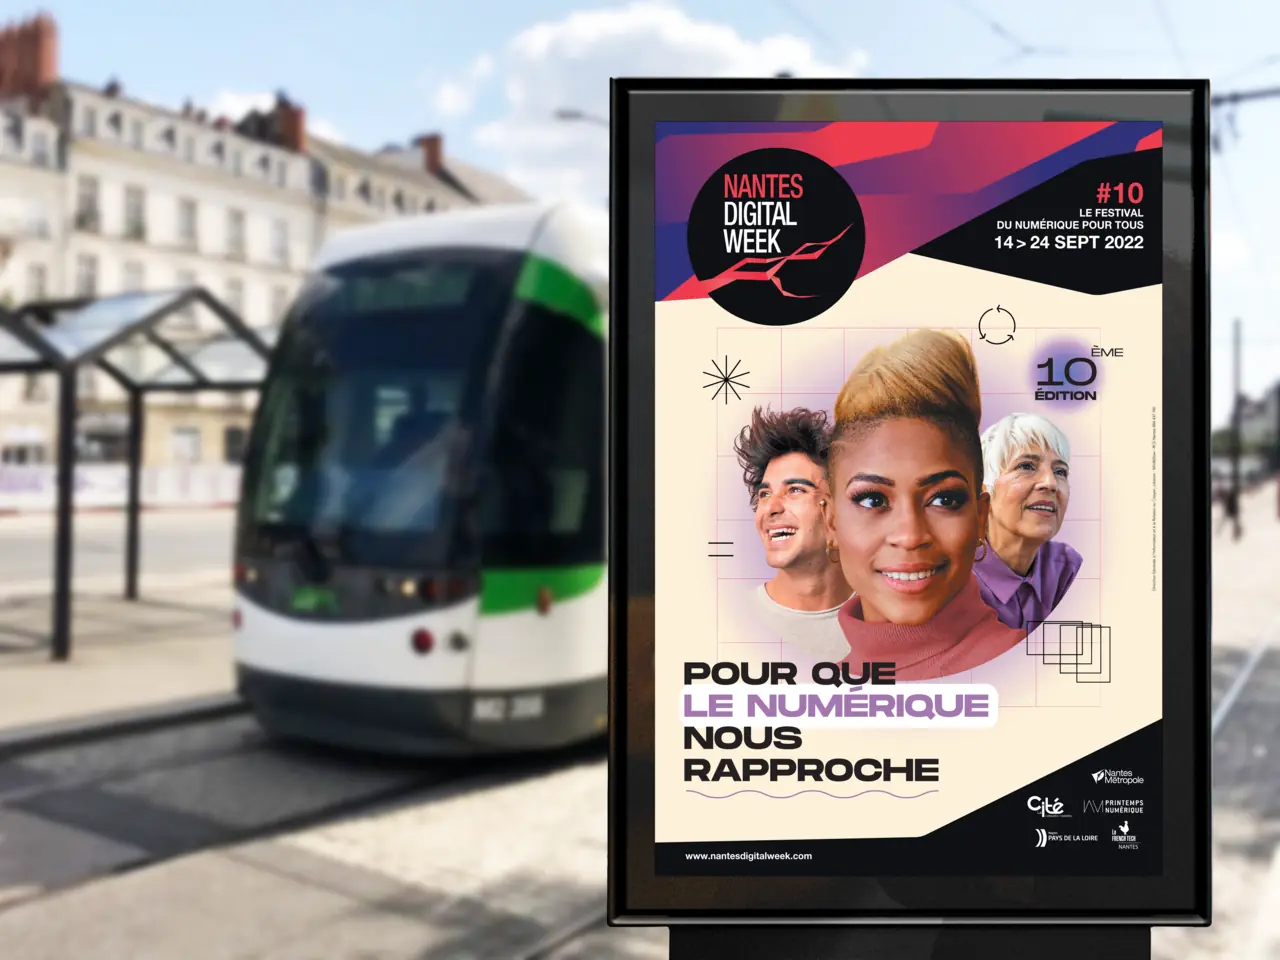 affichage en ville aux abords du tram de l'affiche Nantes Digital Week